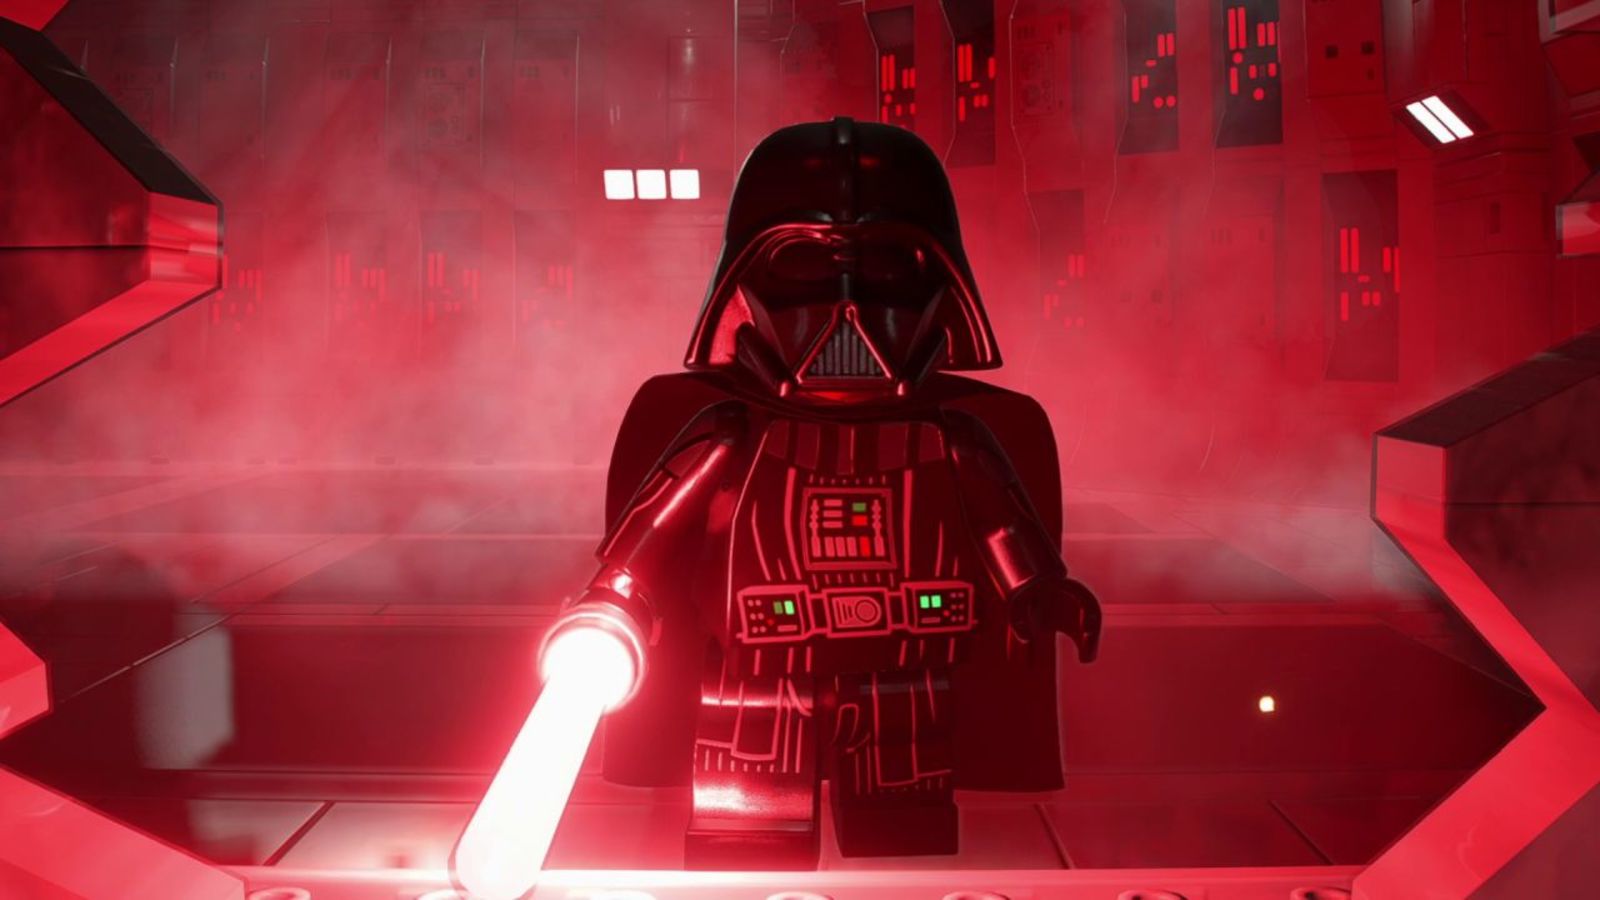 Lego Star Wars: The Skywalker Saga графически значительно преобразилась в сравнении с The Complete Saga